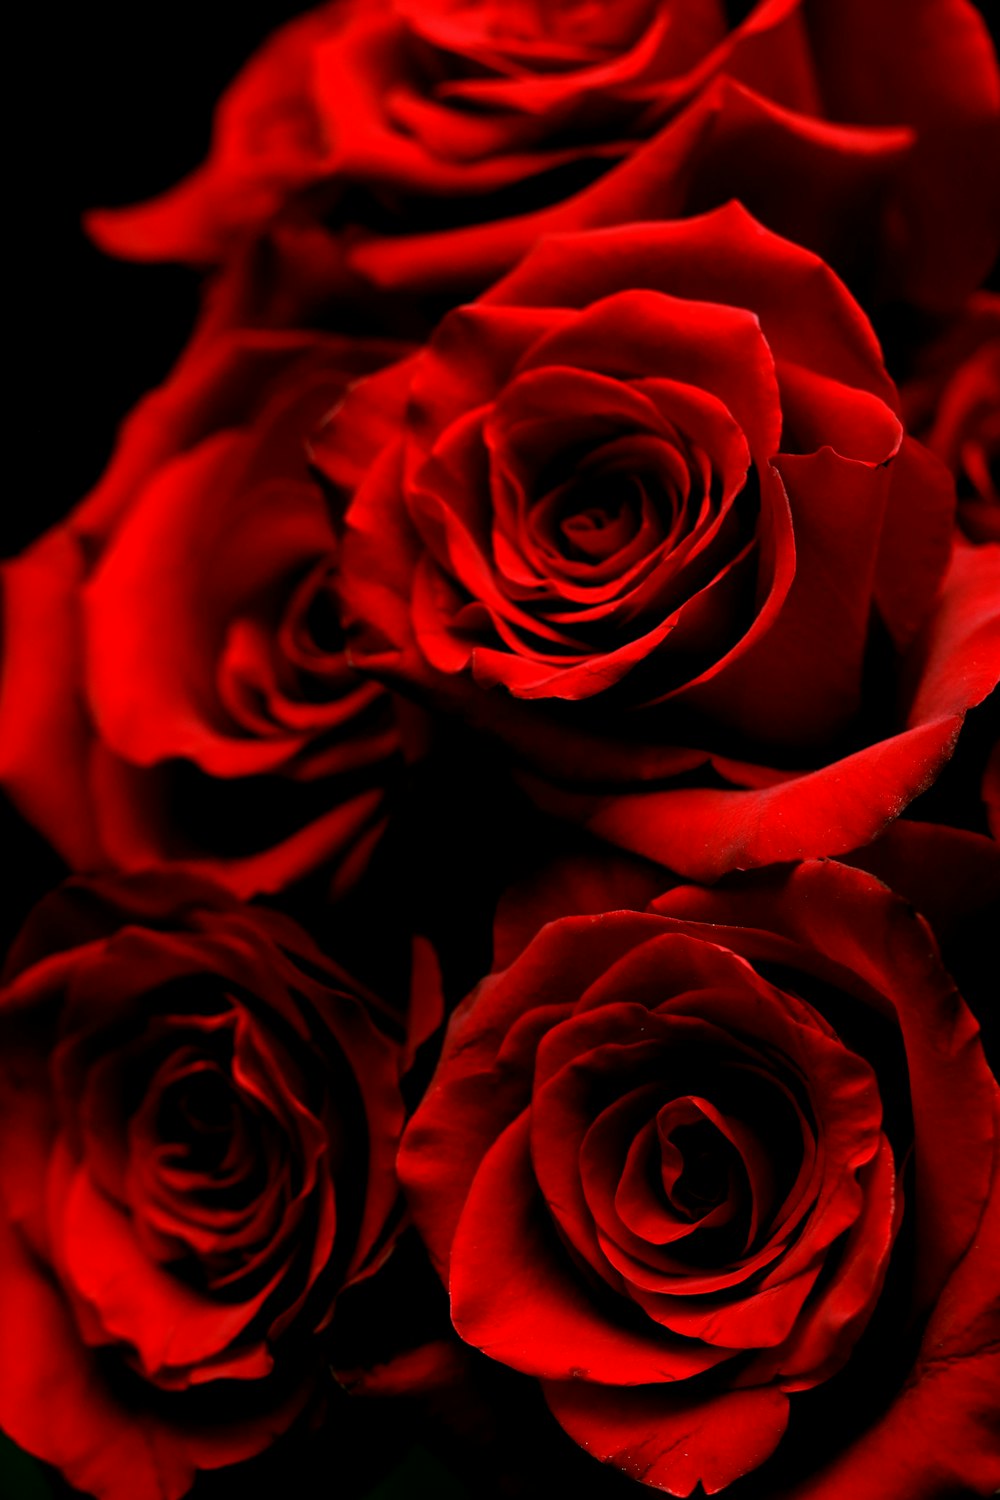 Hoa hồng đỏ đang chờ bạn khám phá! Dù là để tặng người thân yêu hay trang trí cho không gian sống của bạn, những bức ảnh hoa hồng đỏ này sẽ khiến bạn cảm thấy thật sự kì diệu. Hãy cùng nhau thưởng thức vẻ đẹp tuyệt vời của loài hoa tượng trưng cho tình yêu này!